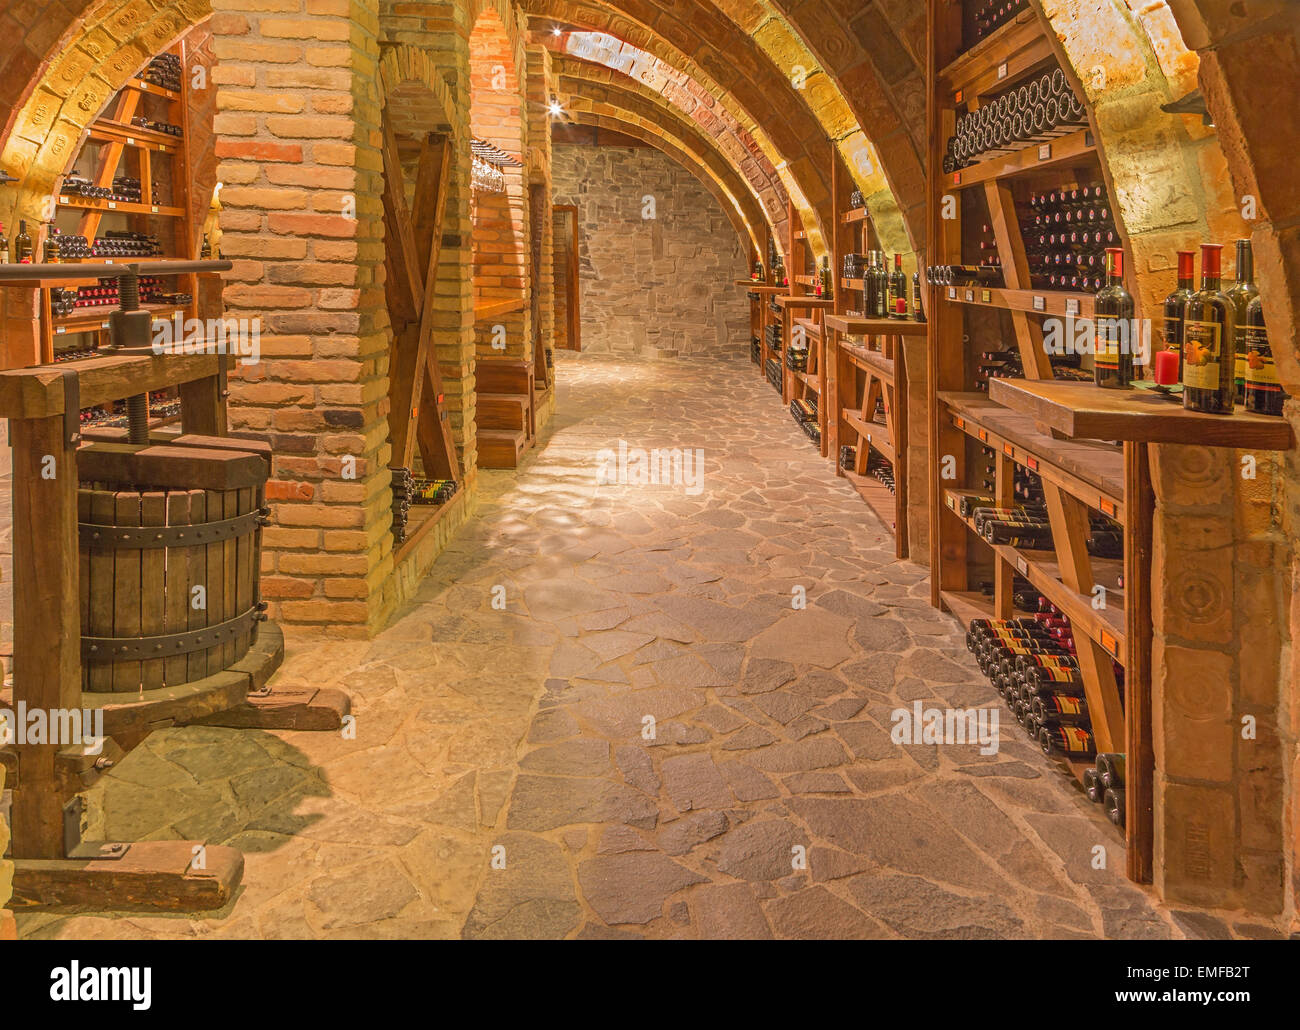 TRNAVA, Slovacchia - 3 Marzo 2014: interno della cantina di vini di grande produttore slovacco 'Mrva e Stanko'. Foto Stock